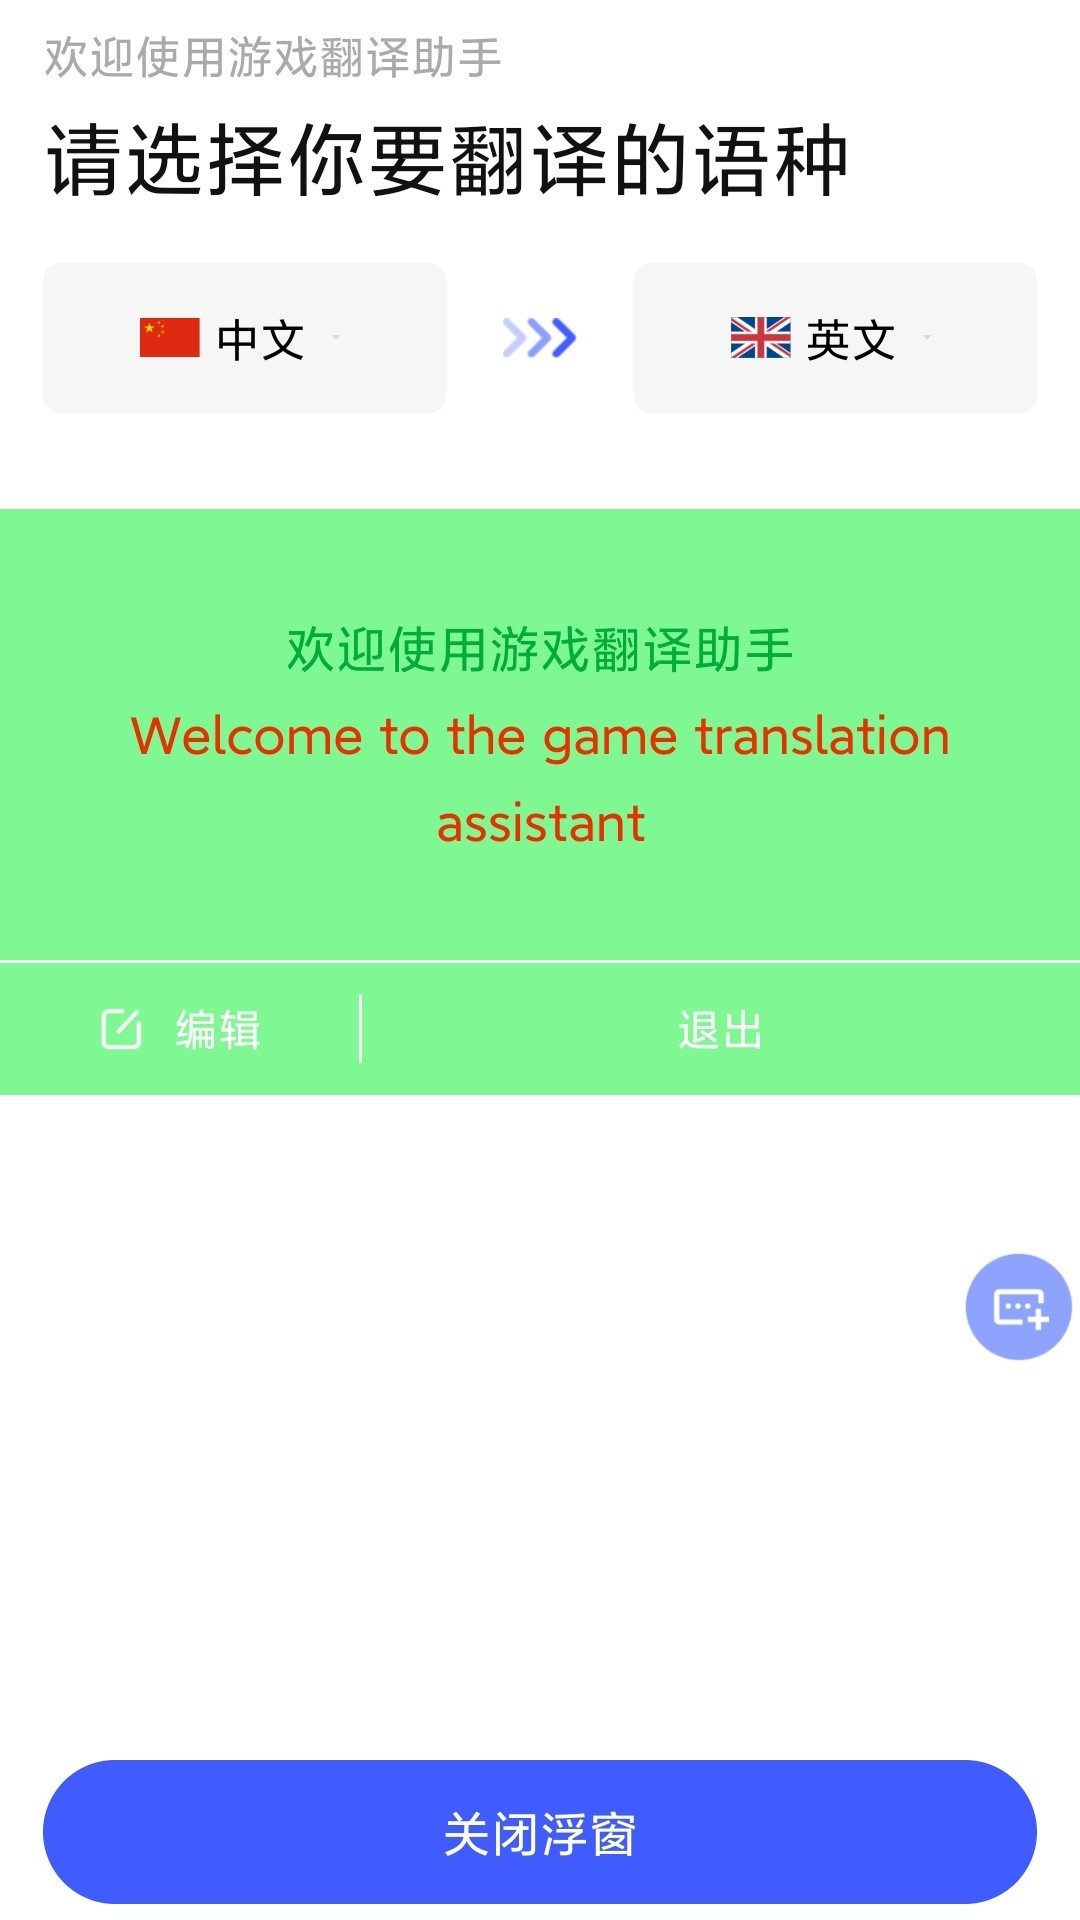 实时翻译屏幕内容的软件_实时翻译屏幕软件_手机游戏实时屏幕翻译工具